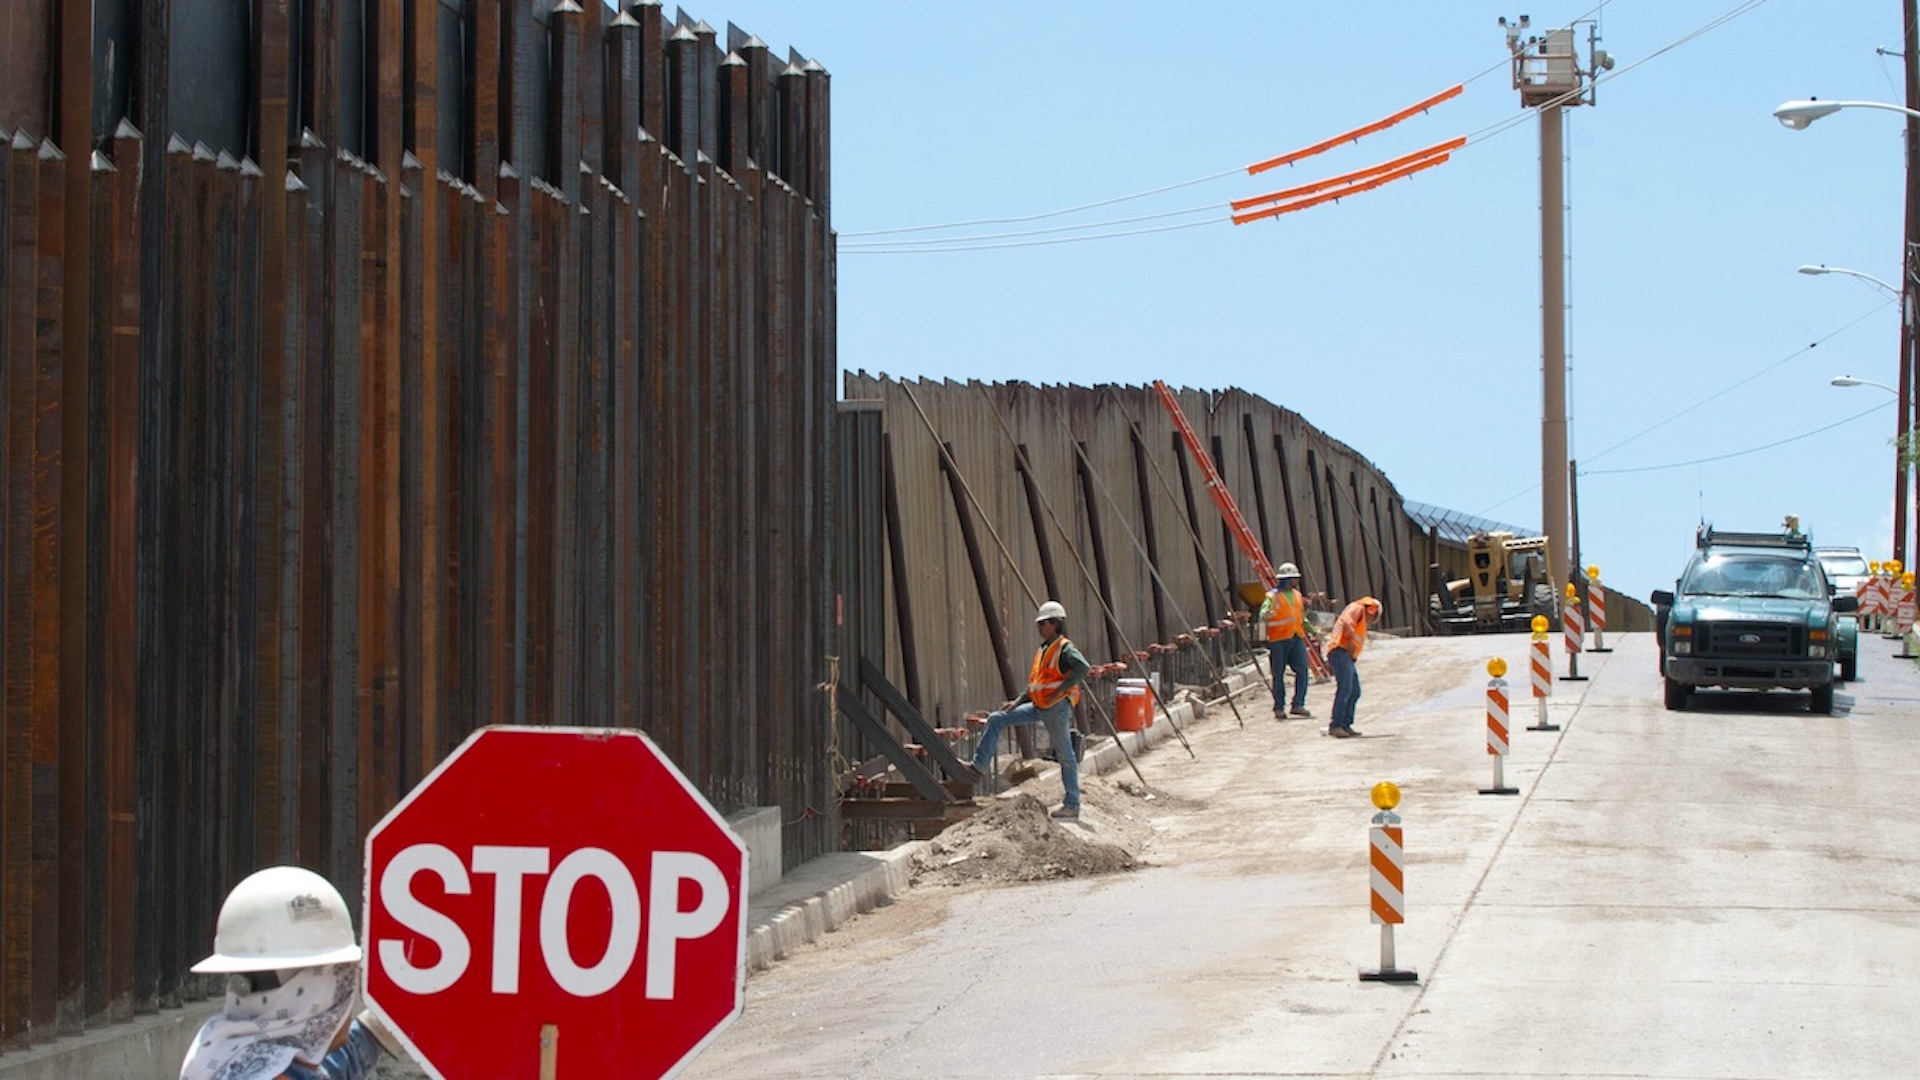 Arizona invertirá 335 millones para construir y mantener el muro fronterizo